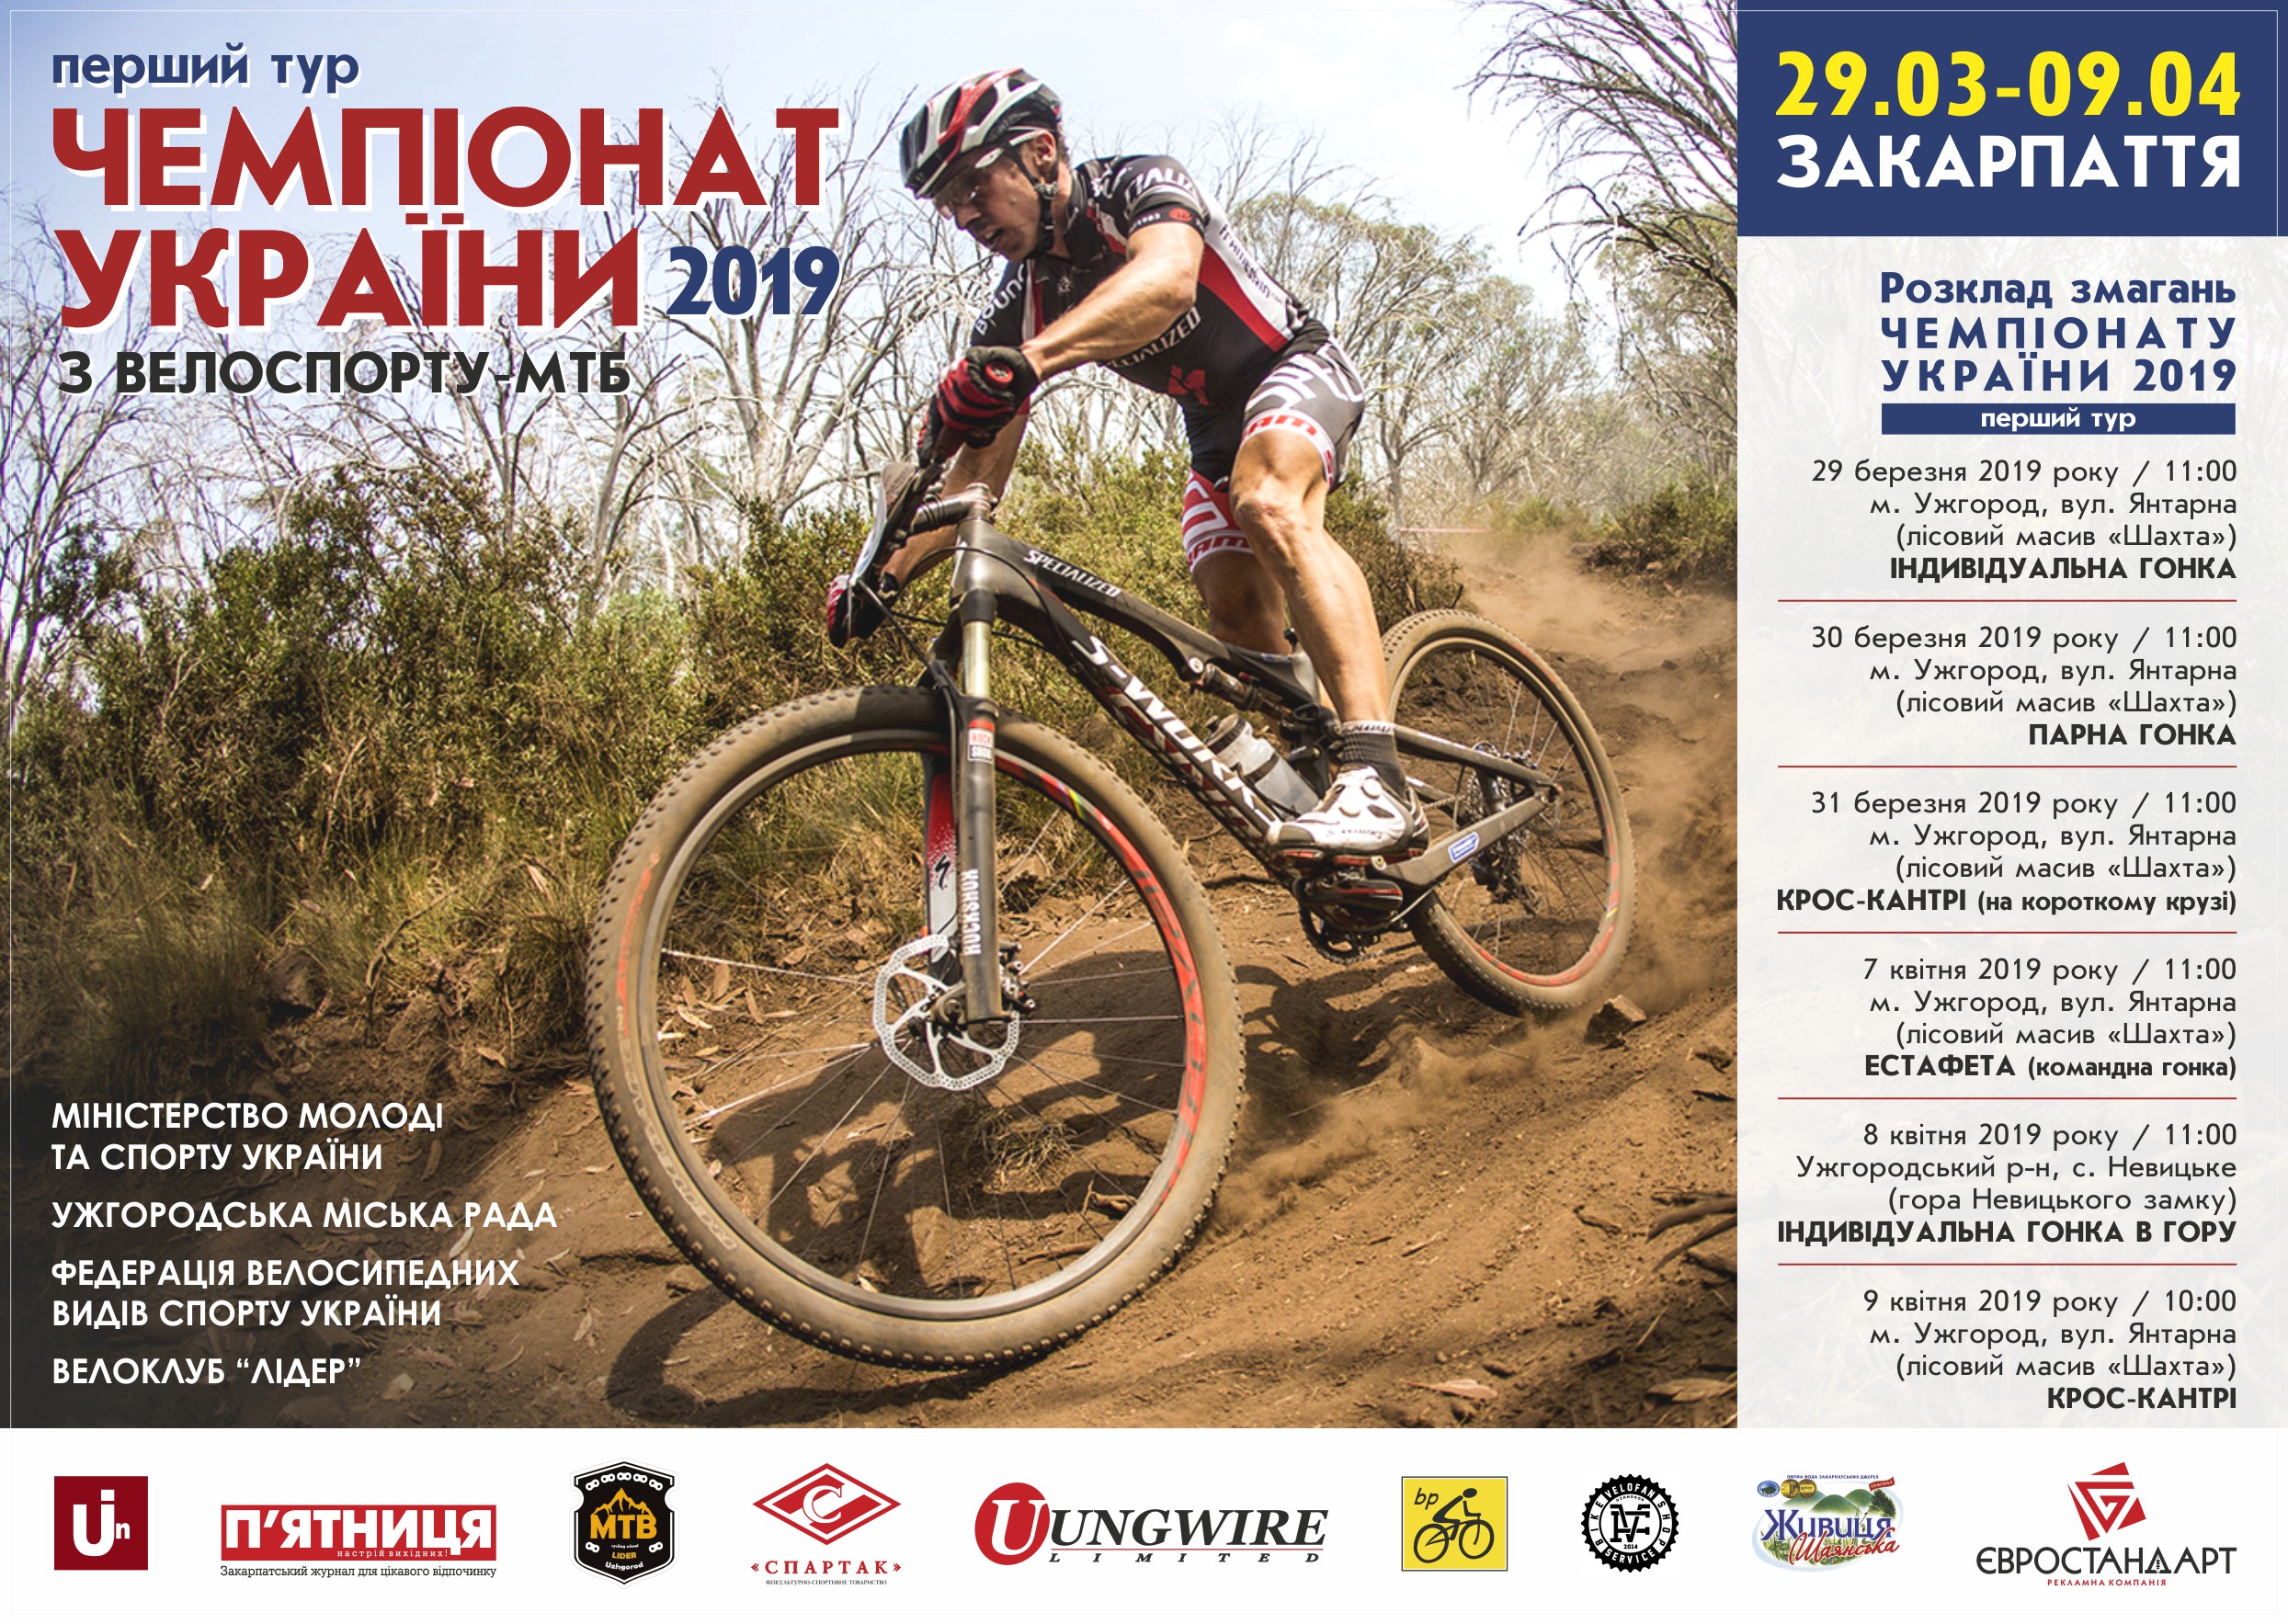 29 березня - 9 квітня – в Ужгороді перший тур Чемпіонату України з велоспорту - маунтенбайку